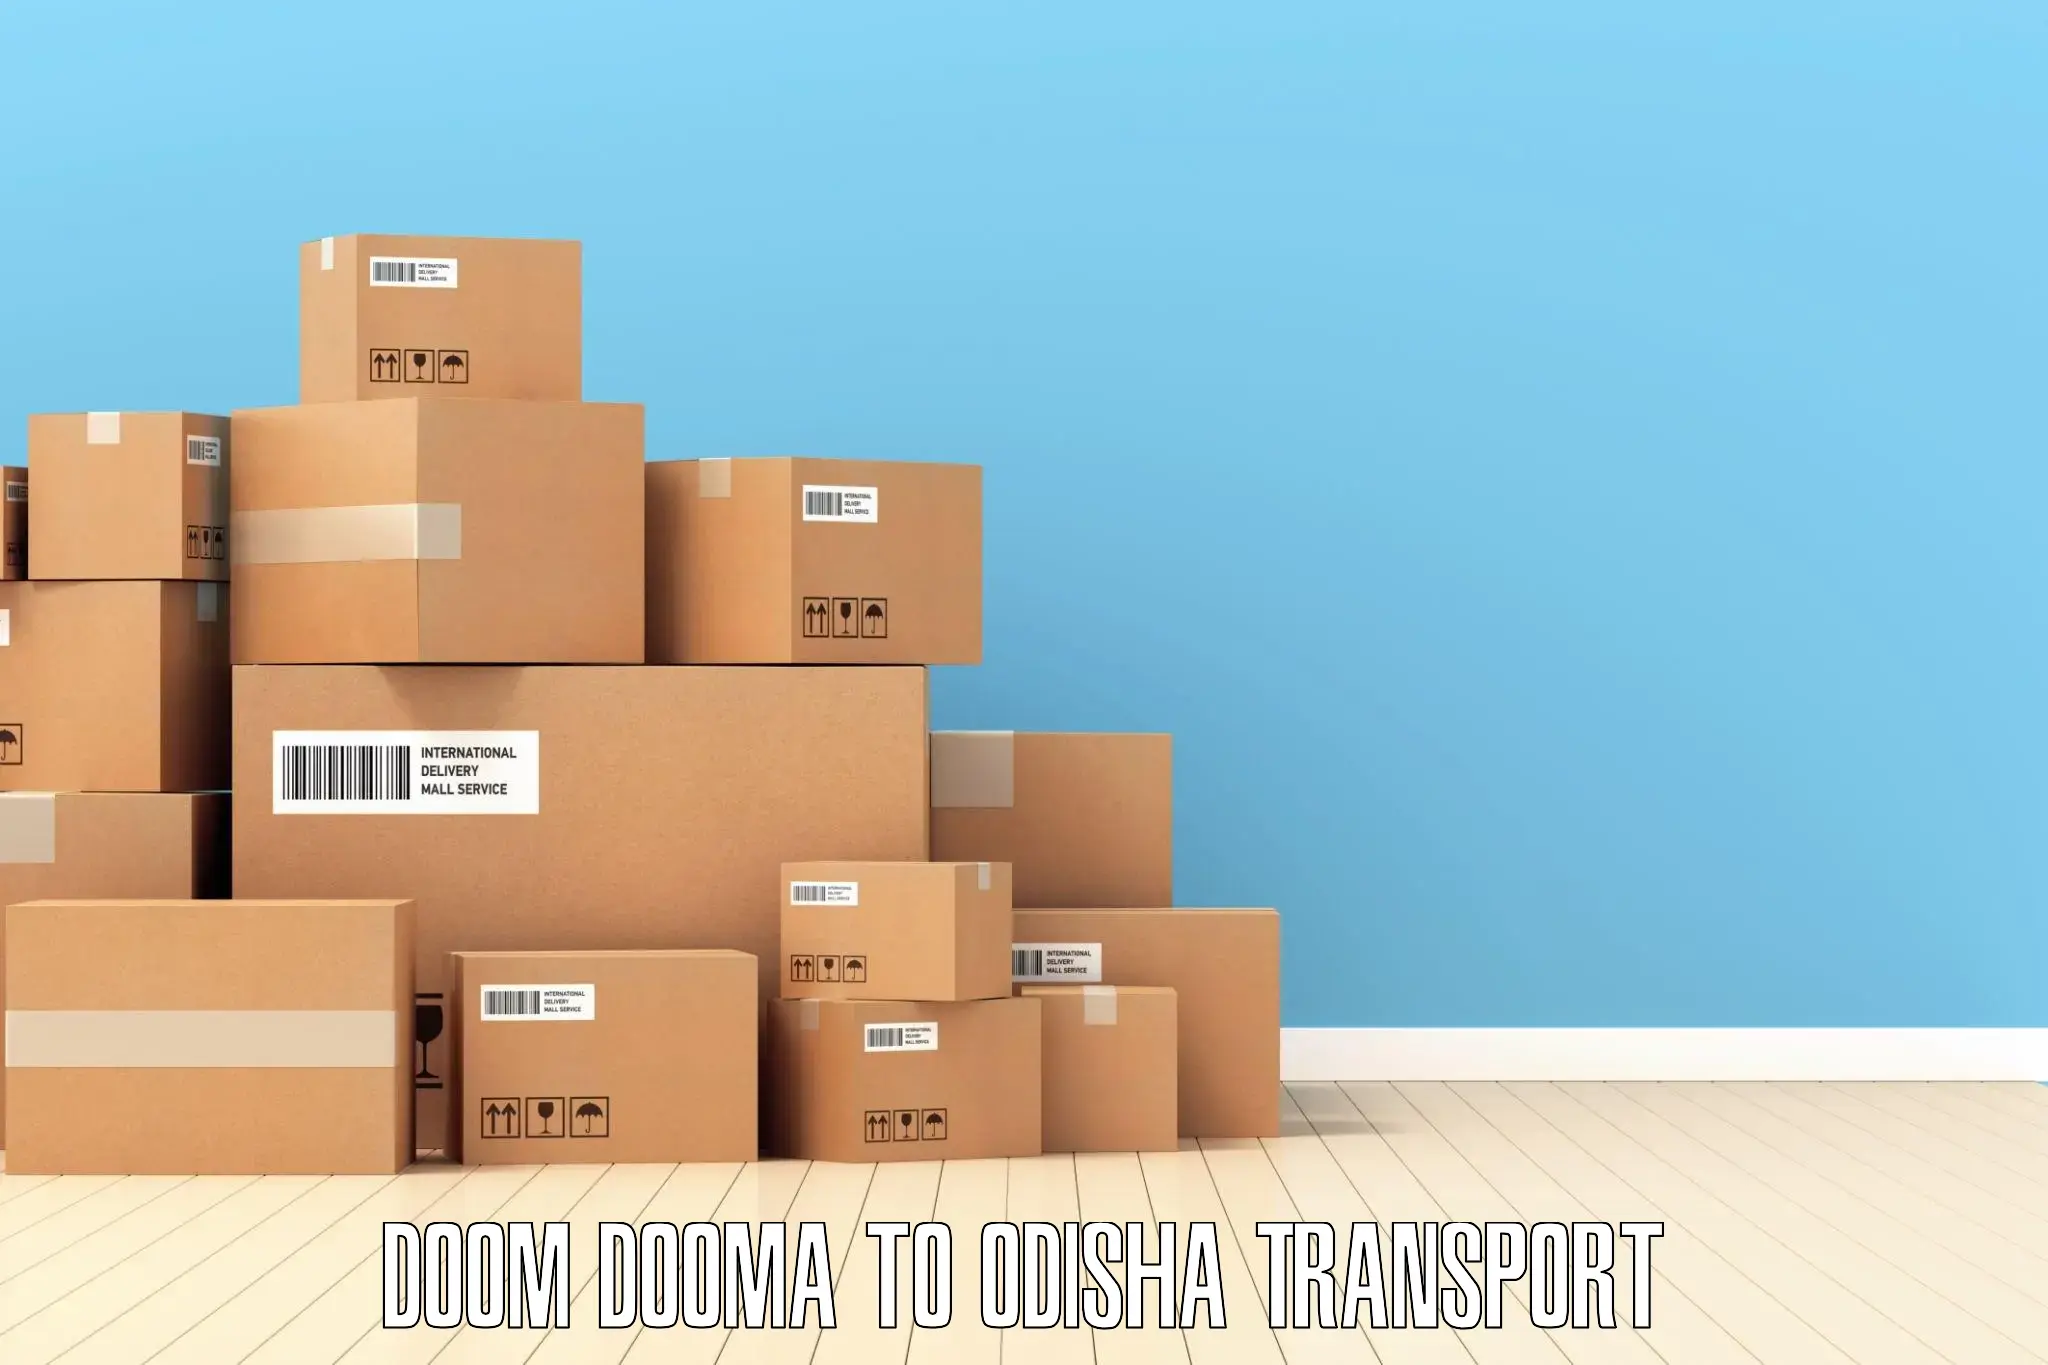 Parcel transport services Doom Dooma to NIT Rourkela